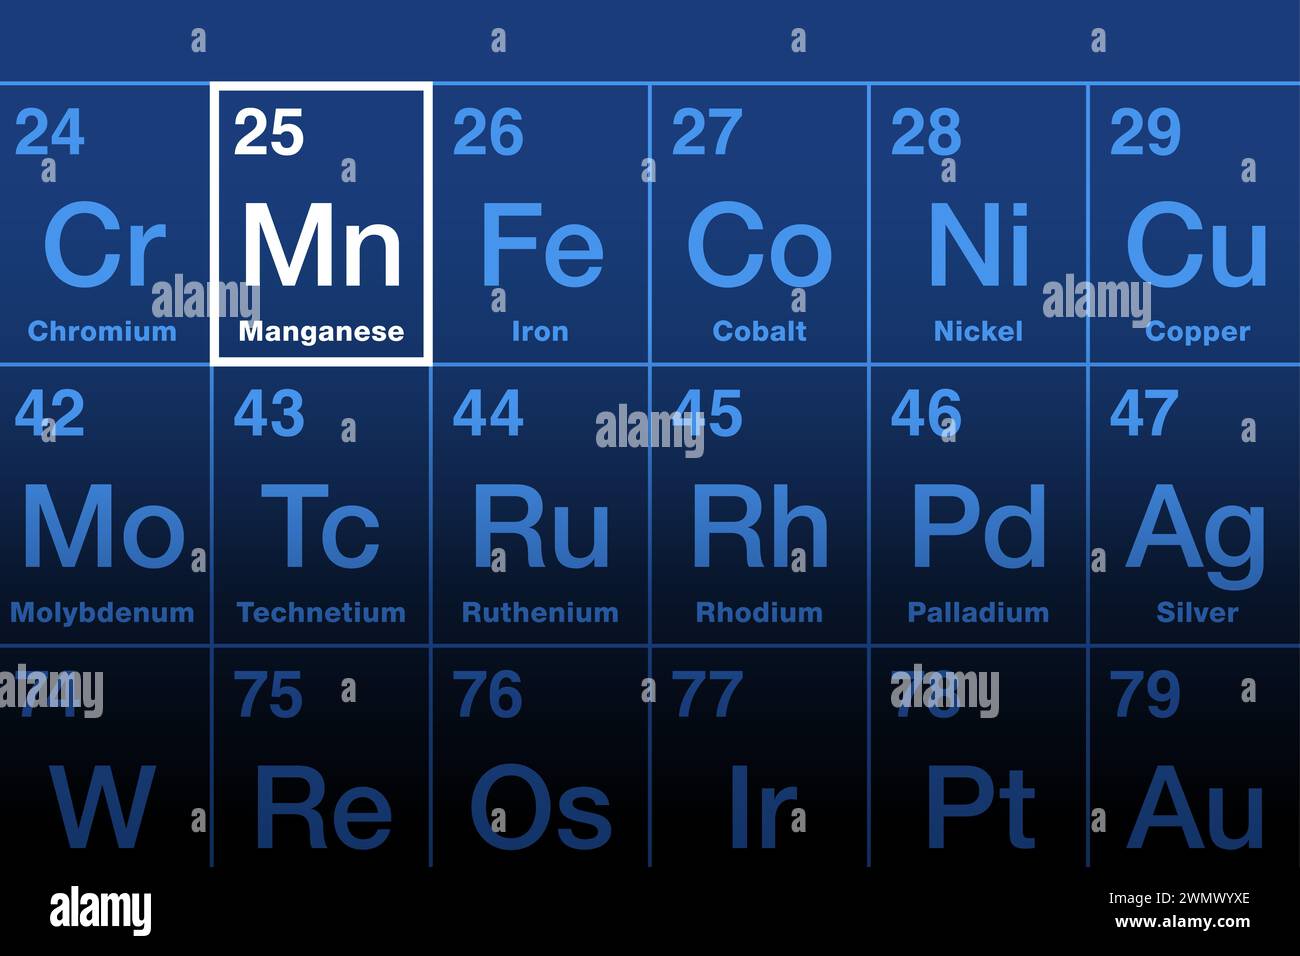 Elément manganèse dans le tableau périodique. Métal de transition et élément chimique dont le symbole est Mn et le numéro atomique 25. Utilisé pour la production d'acier. Banque D'Images